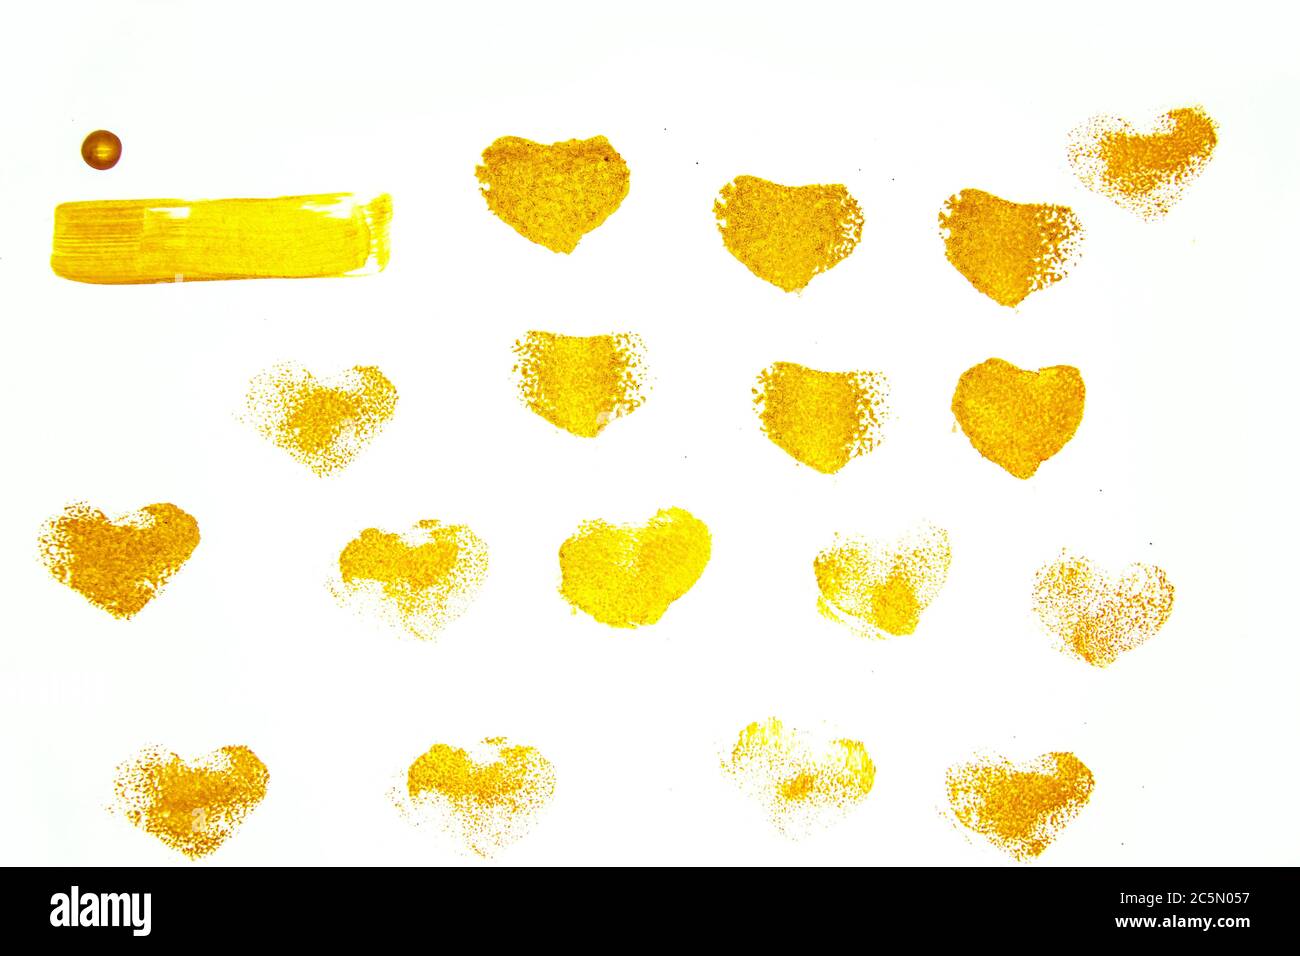 Goldene Herzen vor weißem Hintergrund. Goldene abstrakte Herzen Muster. Handgemachte Design-Elemente für den Einsatz.Painted Grunge Herzen Set für Hintergrund und Stockfoto